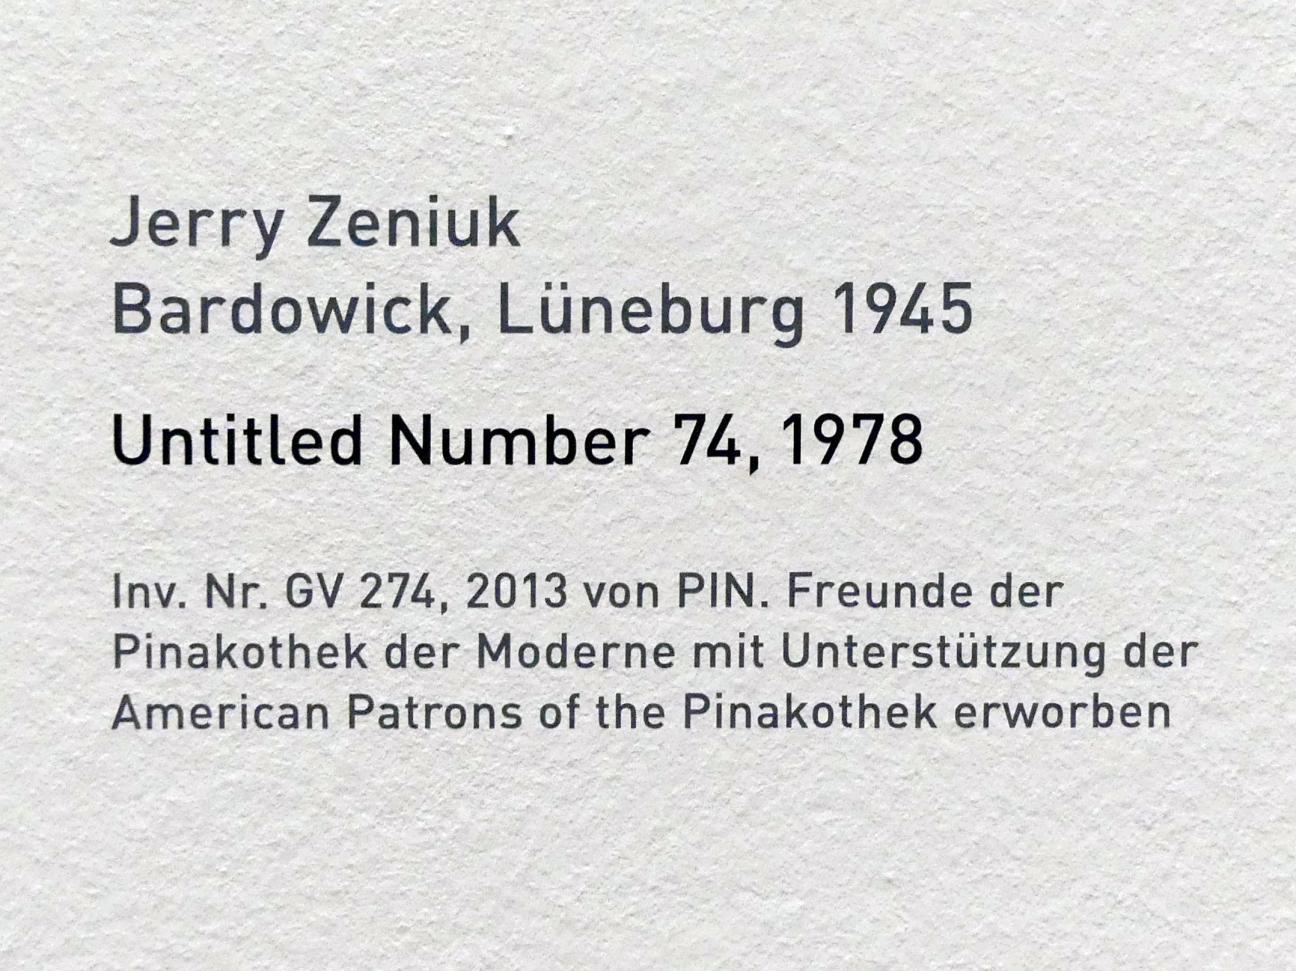 Jerry Zeniuk (1972–2007), Untitled Number 74, München, Pinakothek der Moderne, Saal 16, 1978, Bild 2/2